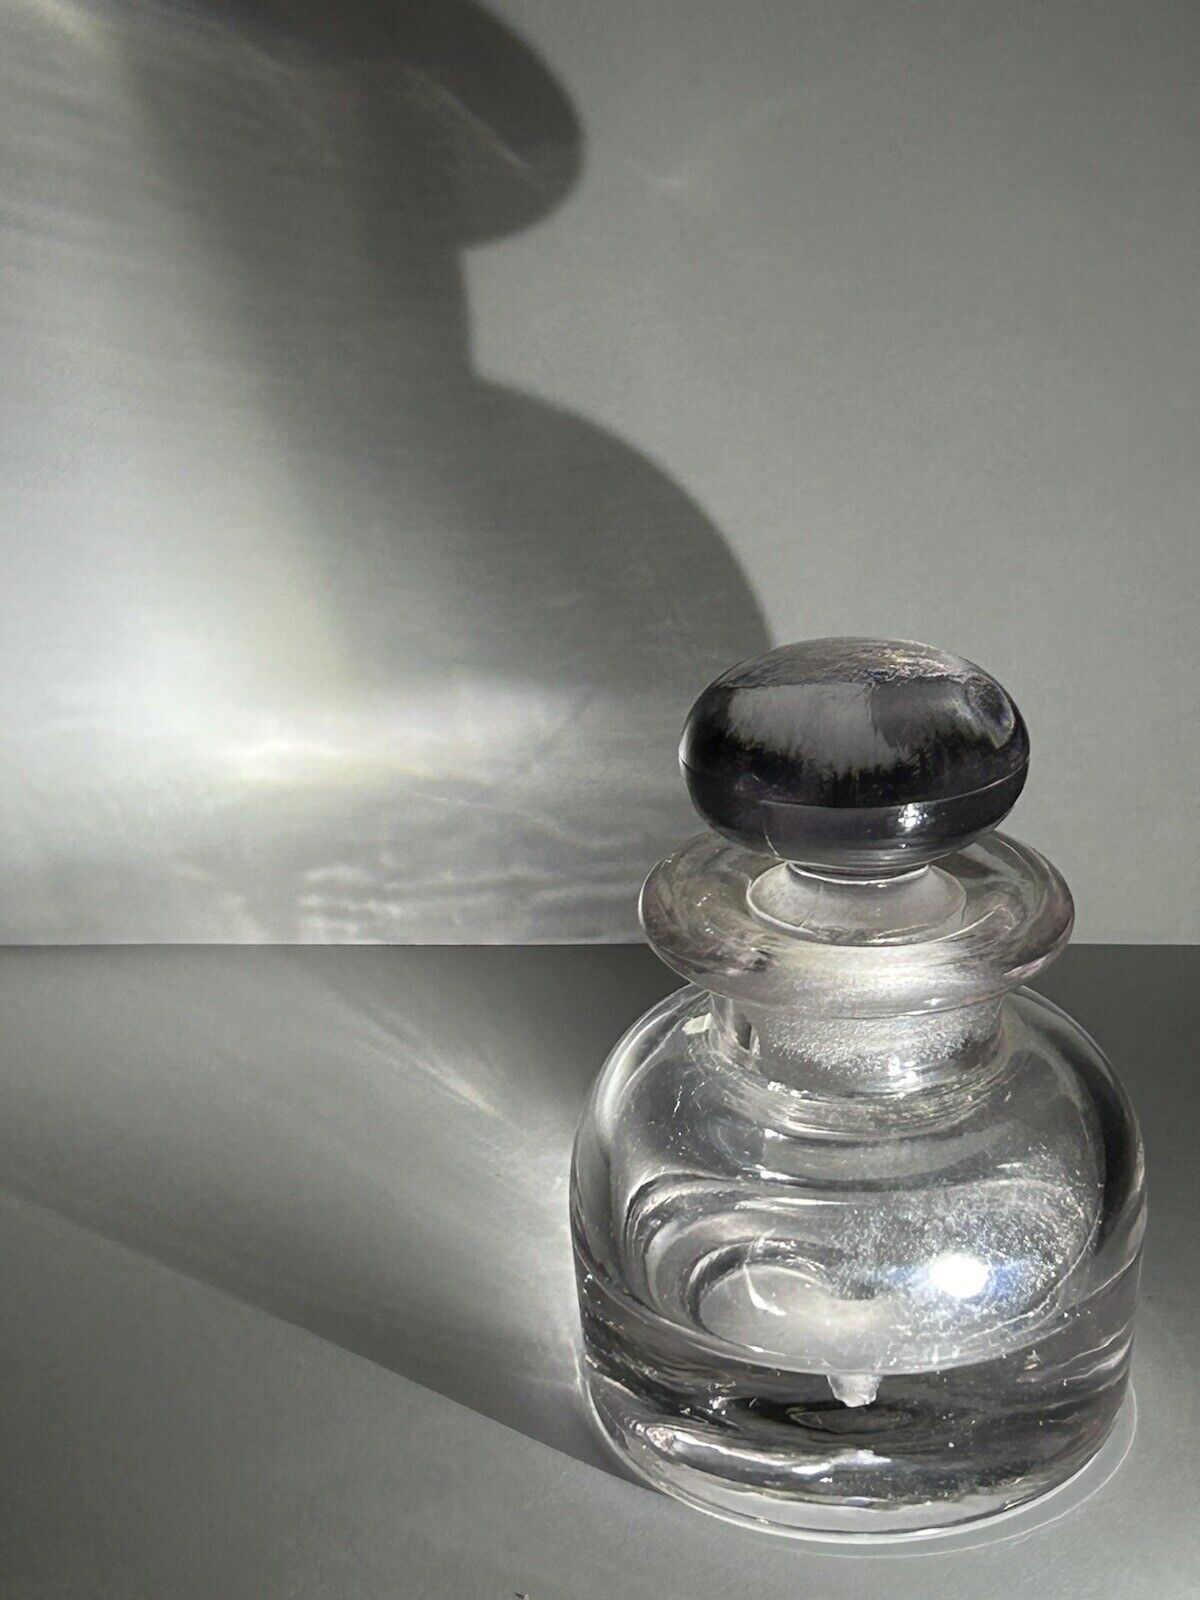 Antique Ink Bottle Glass Crystal with Stopper Crystal Ink Bottle Lavender Tint